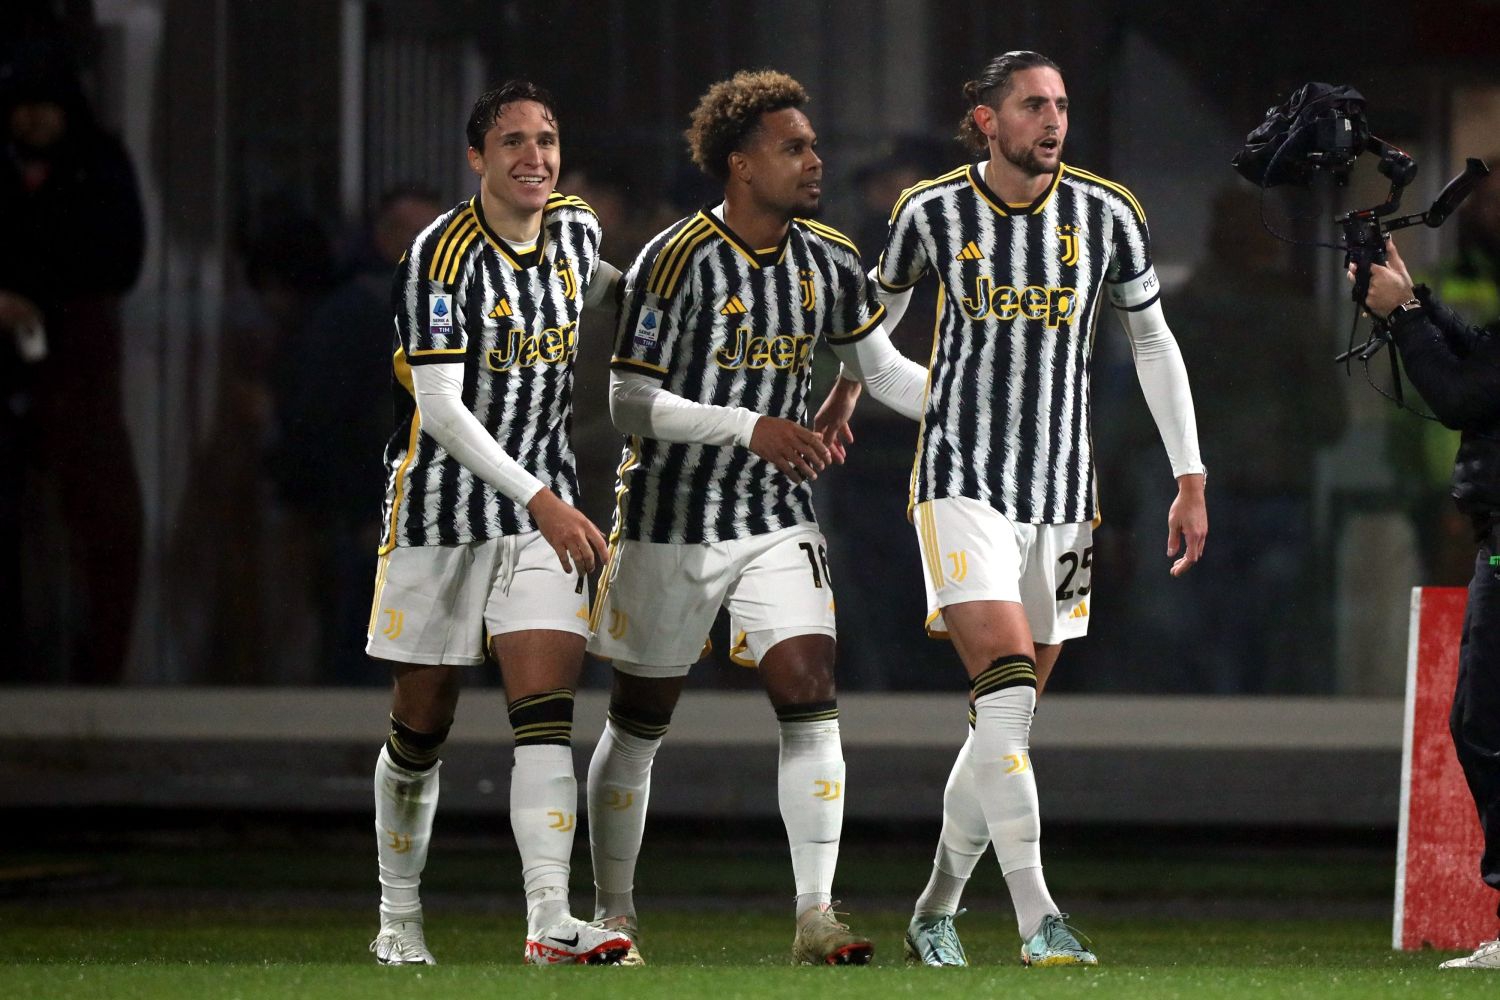 Kluczowy piłkarz Juventusu skomentował swoją przyszłość